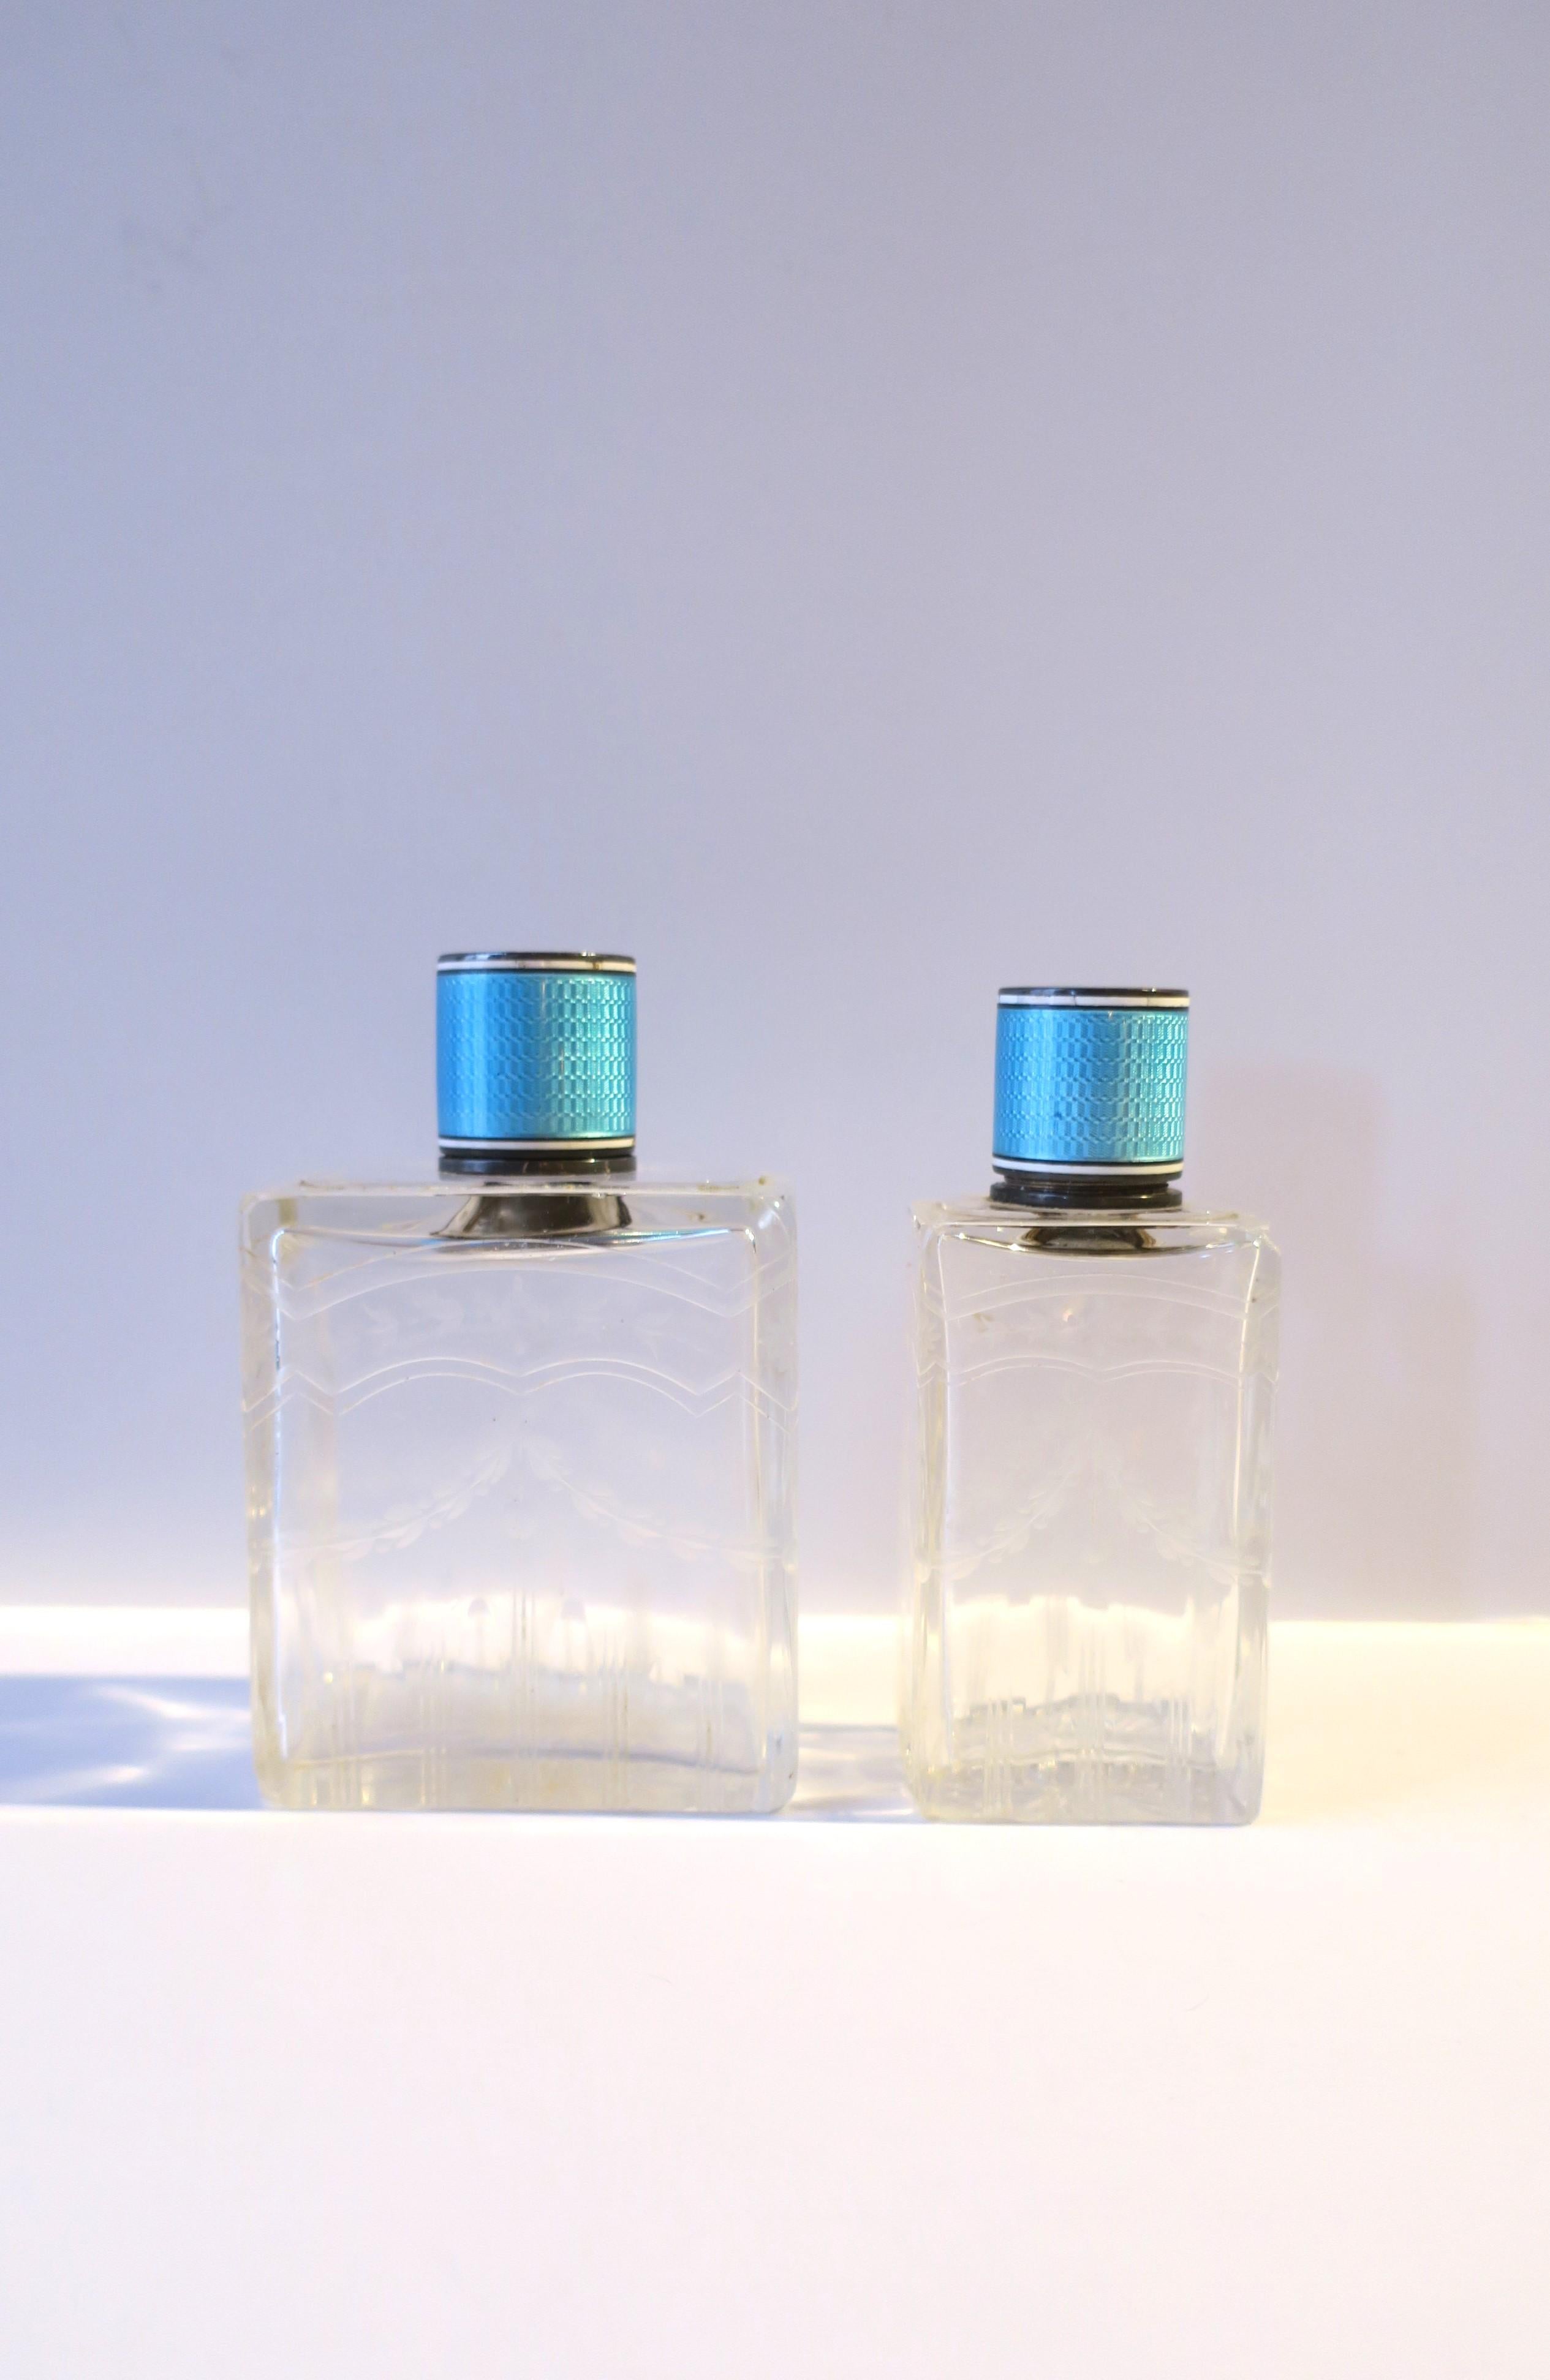 Ein Paar/Satz von zwei (2) französischen Kristall-, Sterlingsilber- und hellblauen guillochierten Emailleflaschen, ca. Ende des 19. bis Anfang des 20. Jahrhunderts, Frankreich. Die Flaschenverschlüsse sind aus schönem Sterlingsilber und